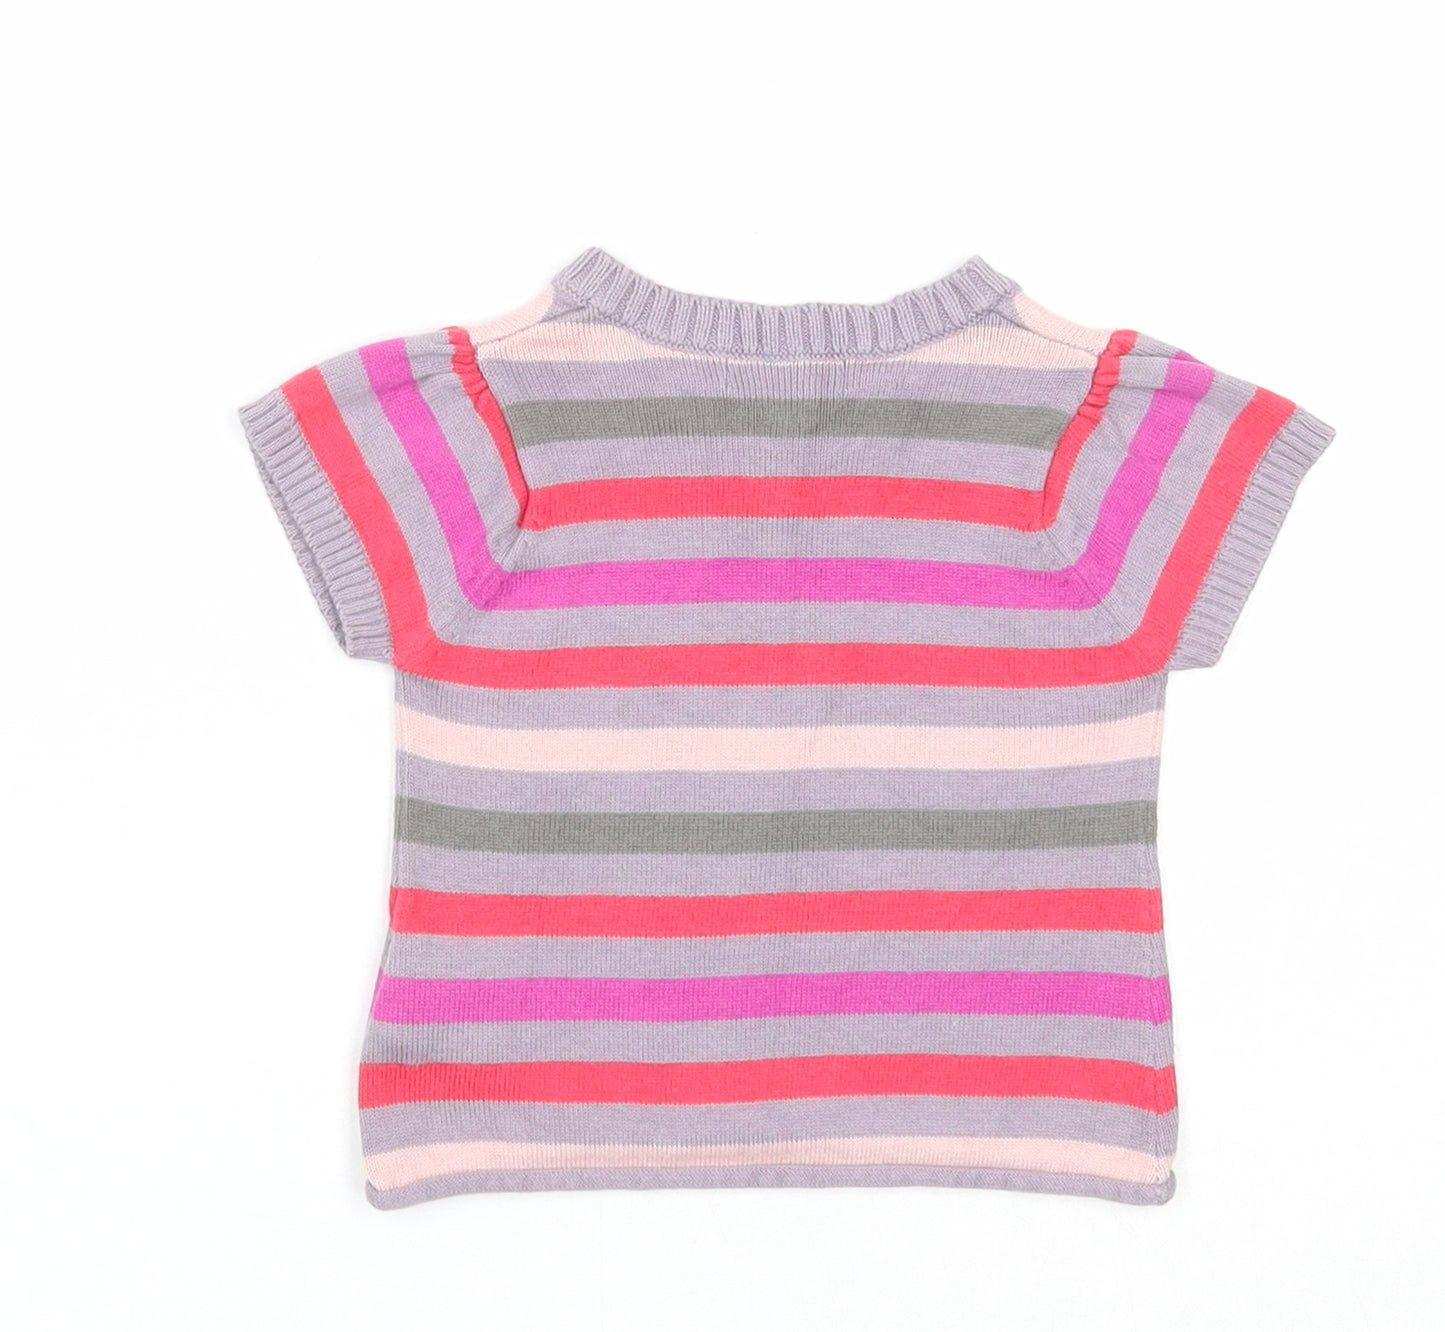 Vertbaudet Girls Multicoloured Striped Cotton Basic T-Shirt Size 3-6 Months Round Neck Button